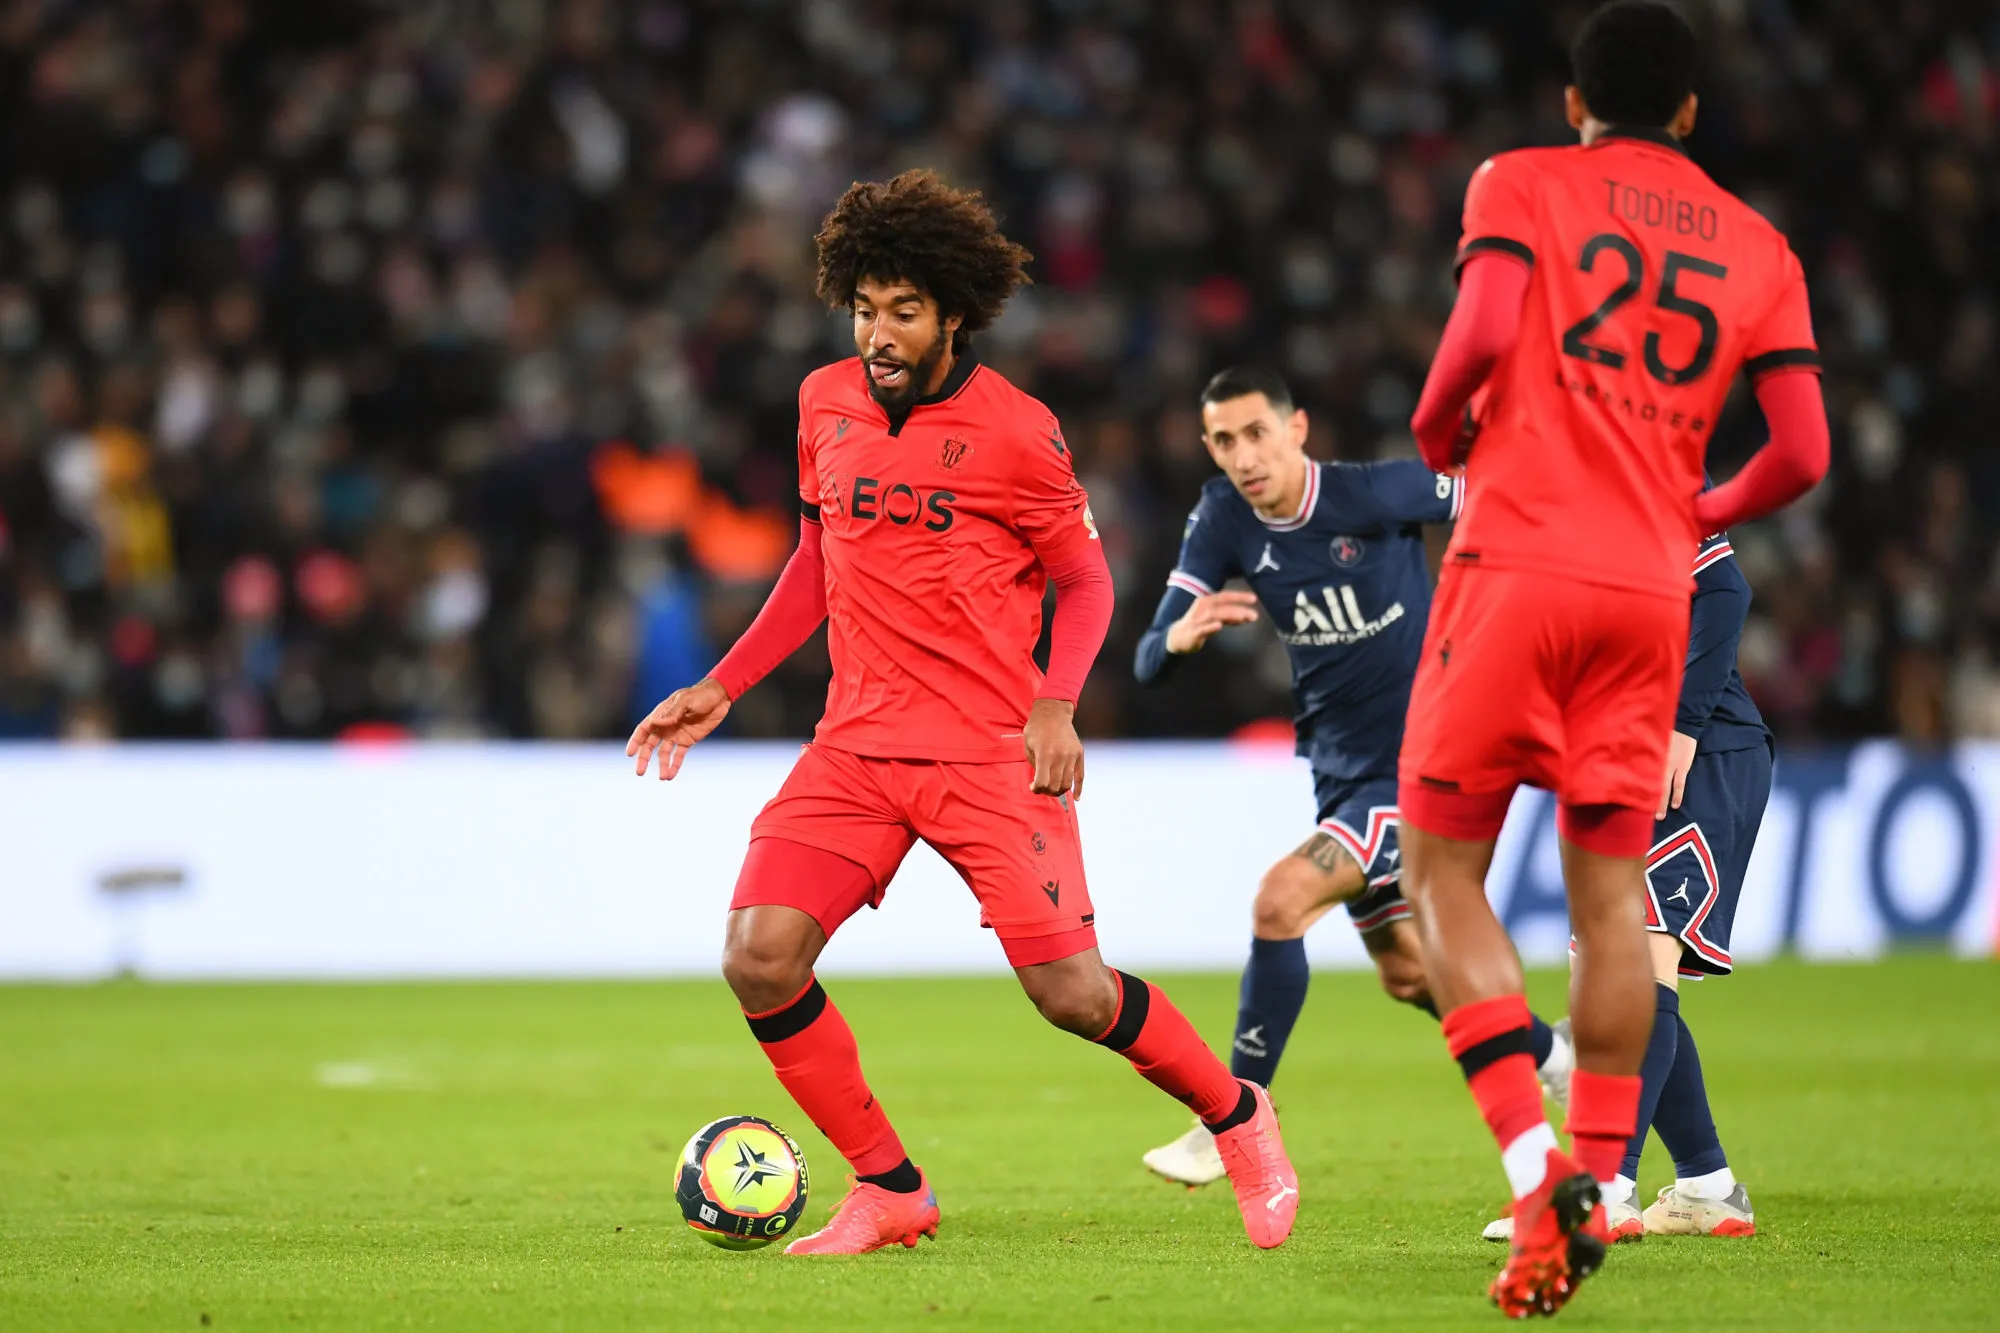 Pronostic Nice PSG : Analyse, cotes et prono du match de Ligue 1